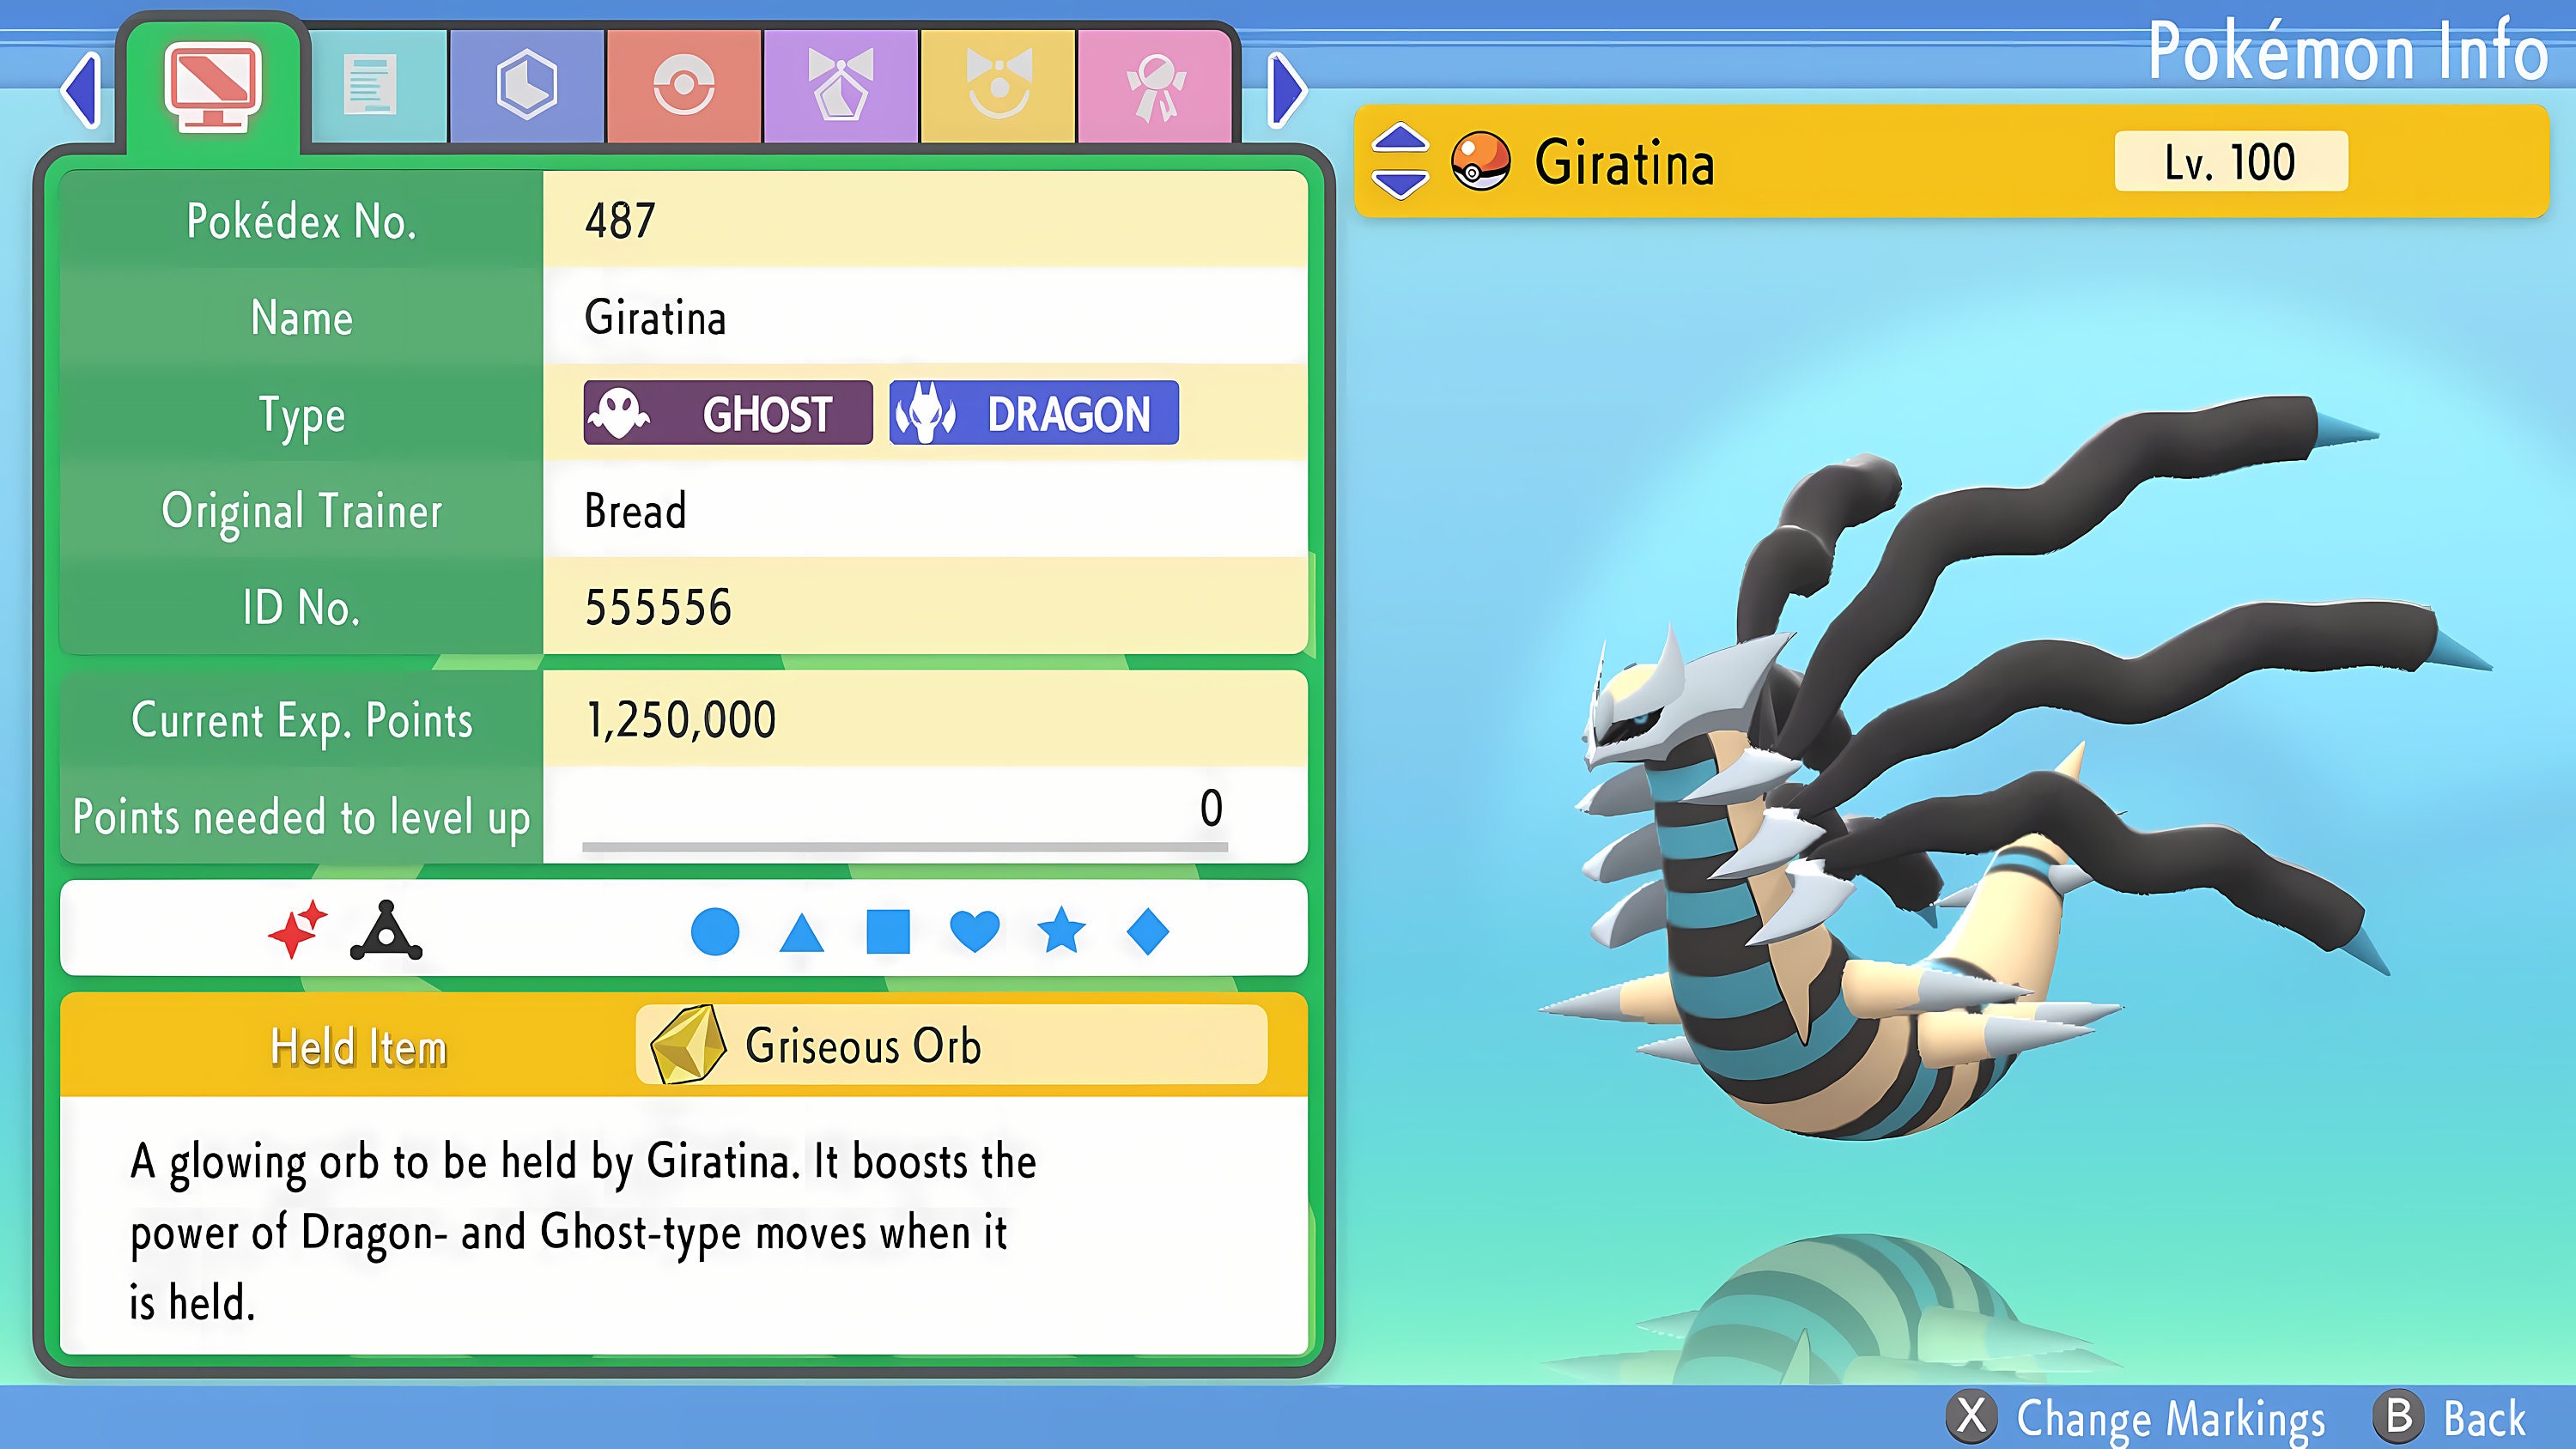 Can Giratina (Origin) be shiny in Pokemon GO?